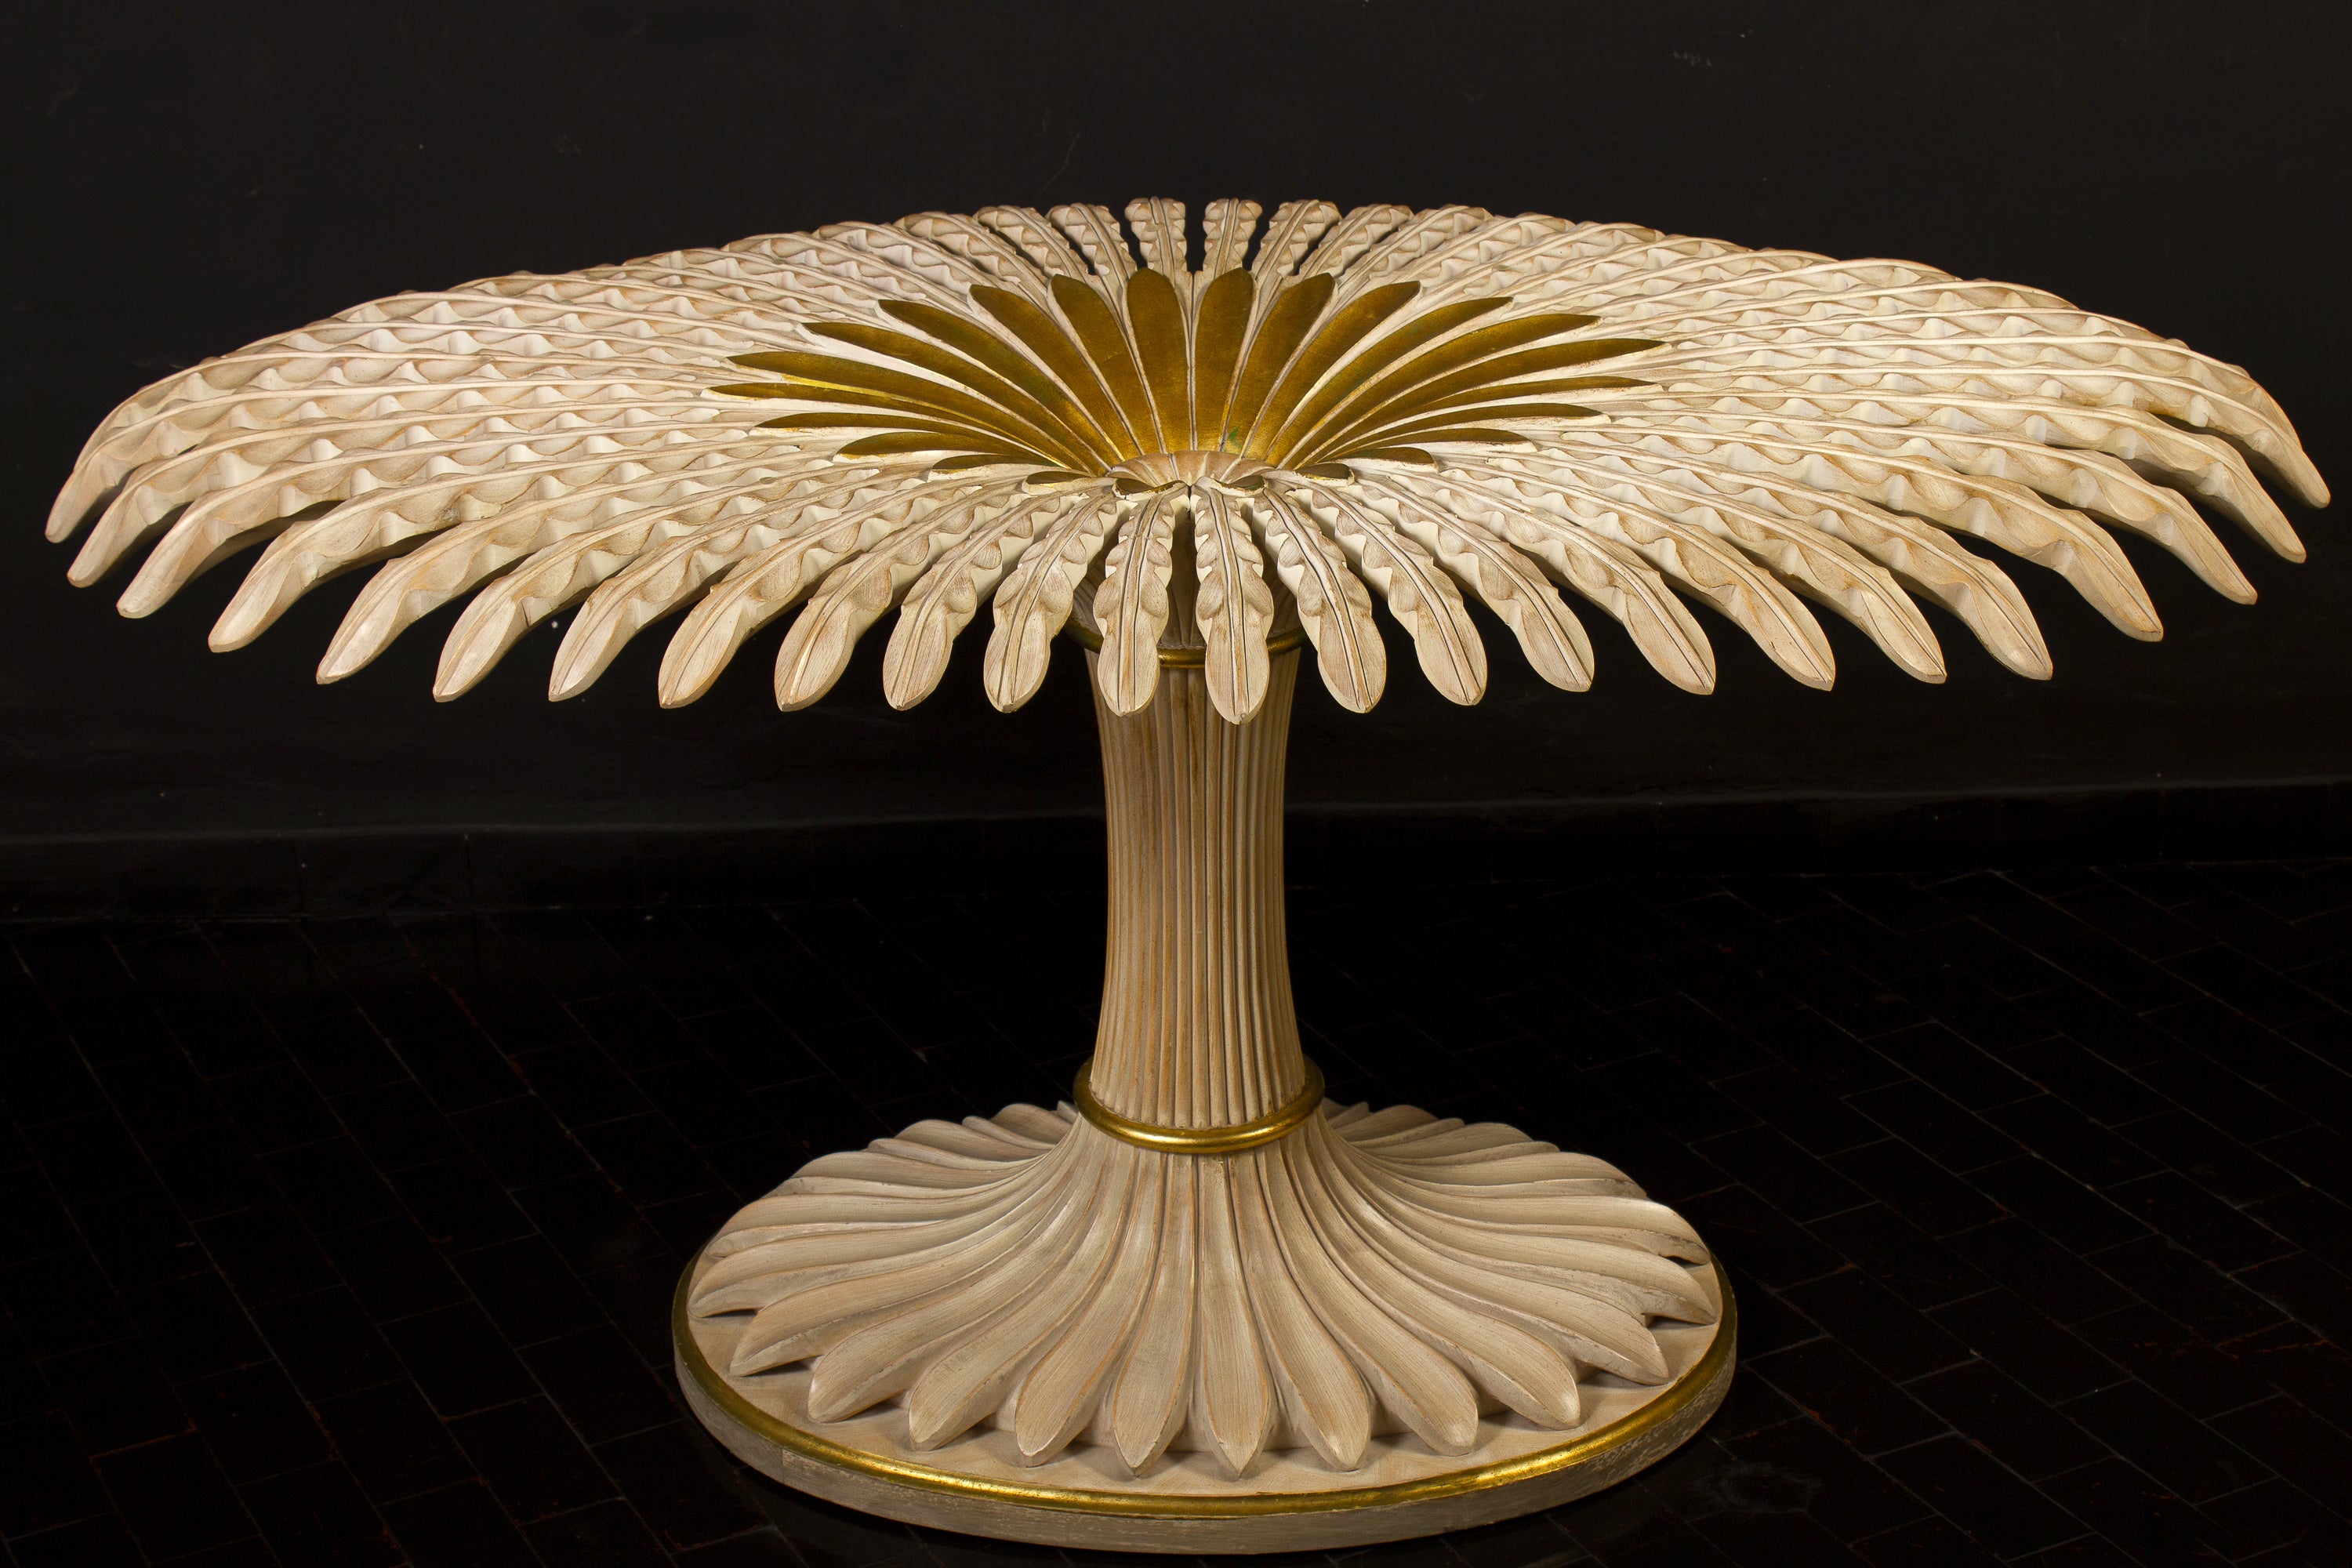 Spectaculaire table de salle à manger ou de centre en bois doré finement sculpté et peint en ivoire, avec plateau ovale en cristal. 
Superbe table décorative provençale de l'île de Capri.
Excellent état d'origine, avec seulement l'usure du temps.